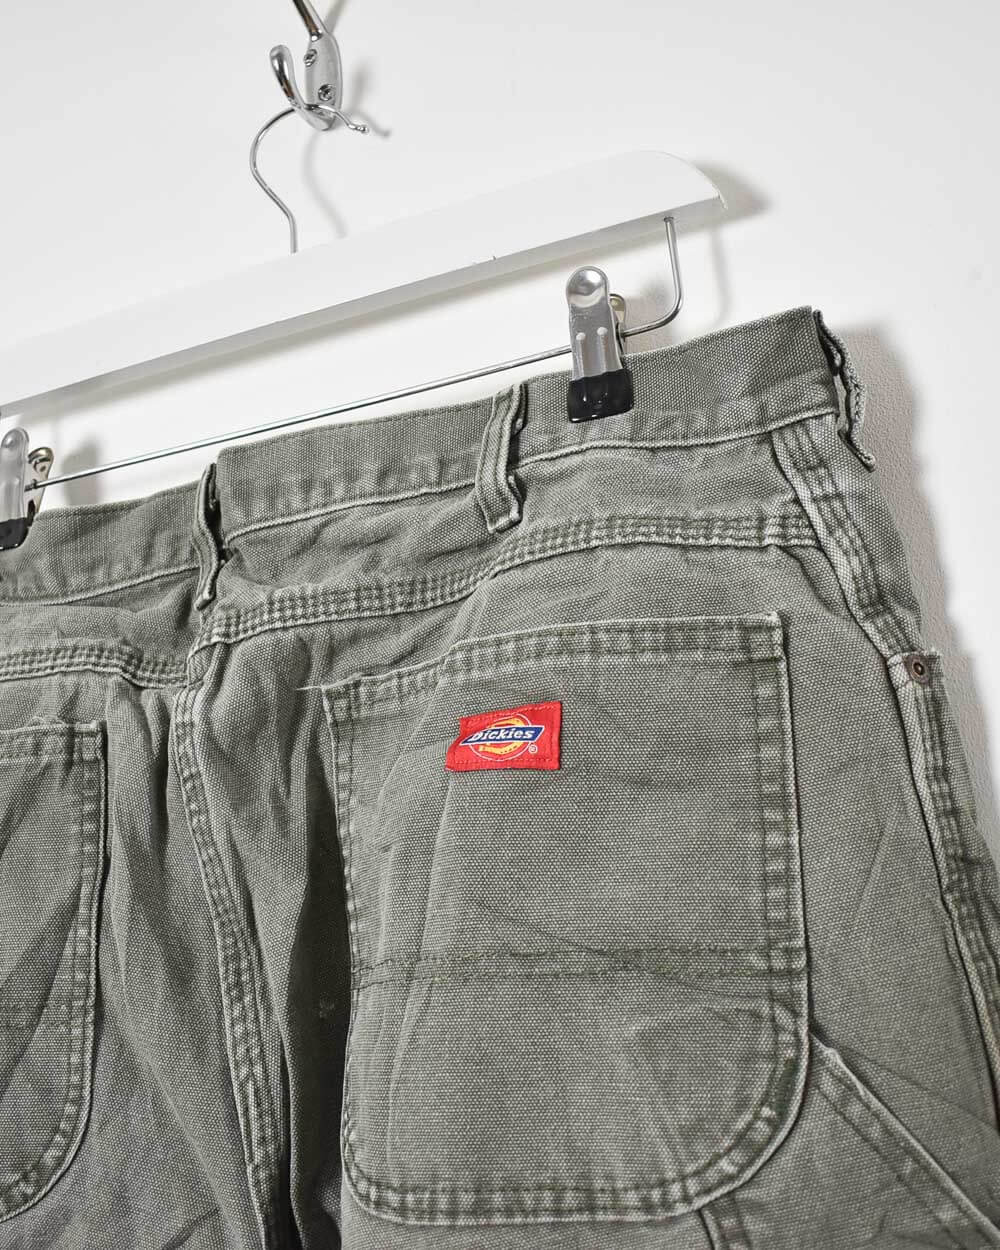 Khaki Dickies Jeans - W36 L31